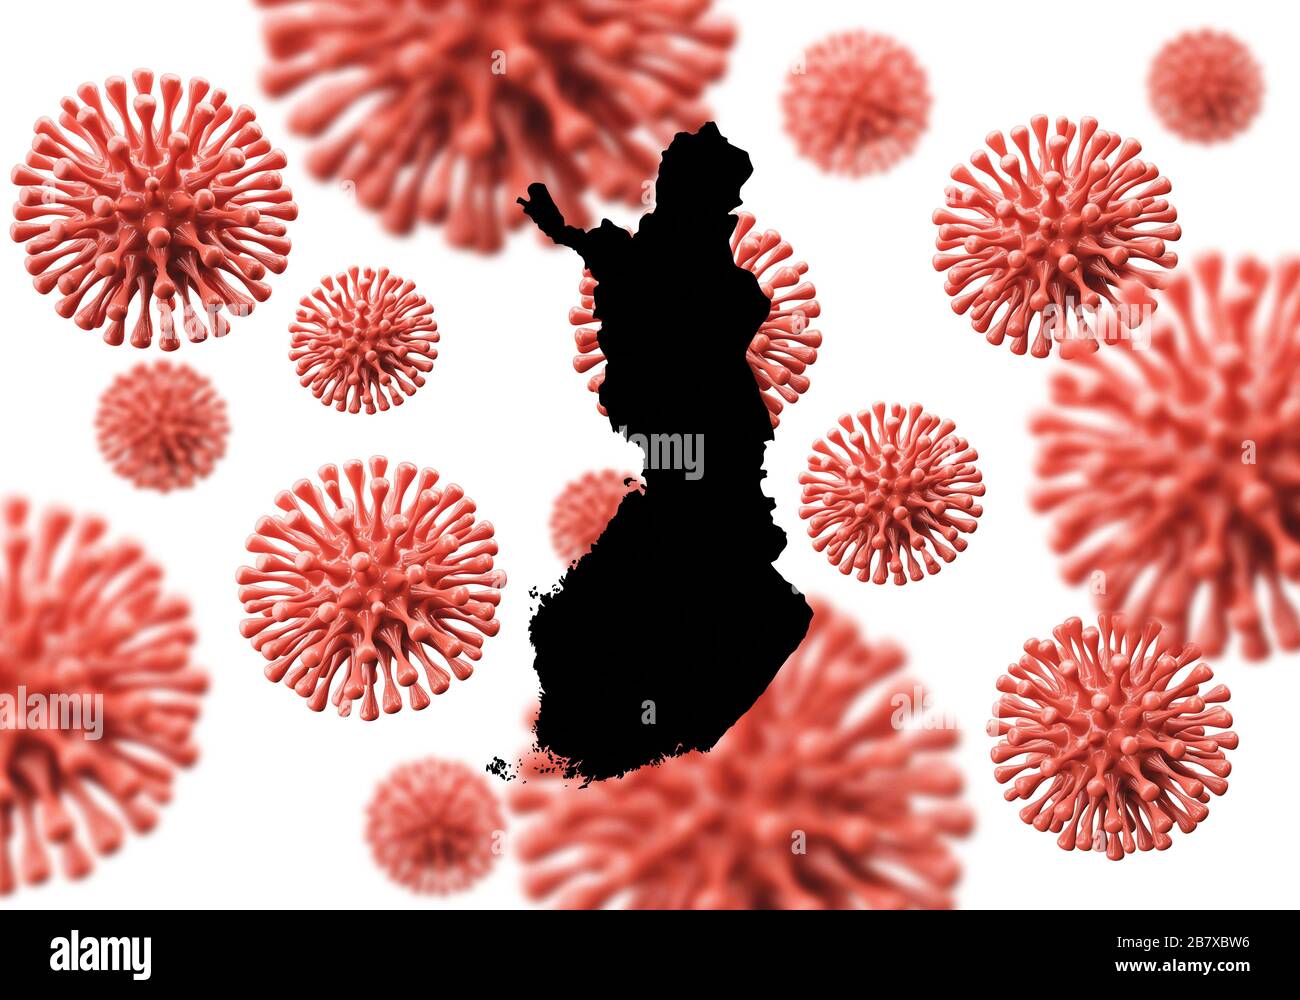 Finlande carte sur un fond de microbe de virus scientifique. Rendu 3D Banque D'Images